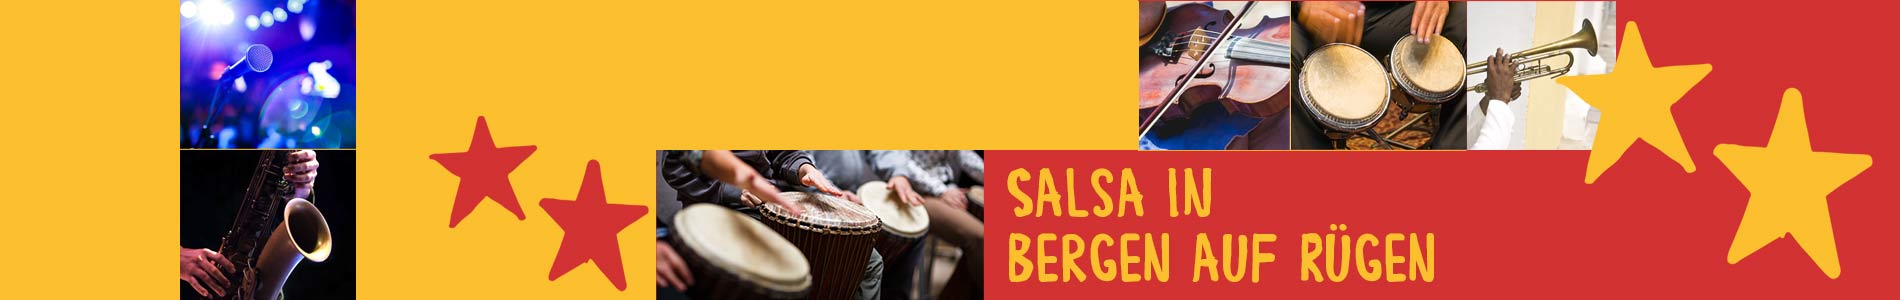 Salsa in Bergen auf Rügen – Salsa lernen und tanzen, Tanzkurse, Partys, Veranstaltungen